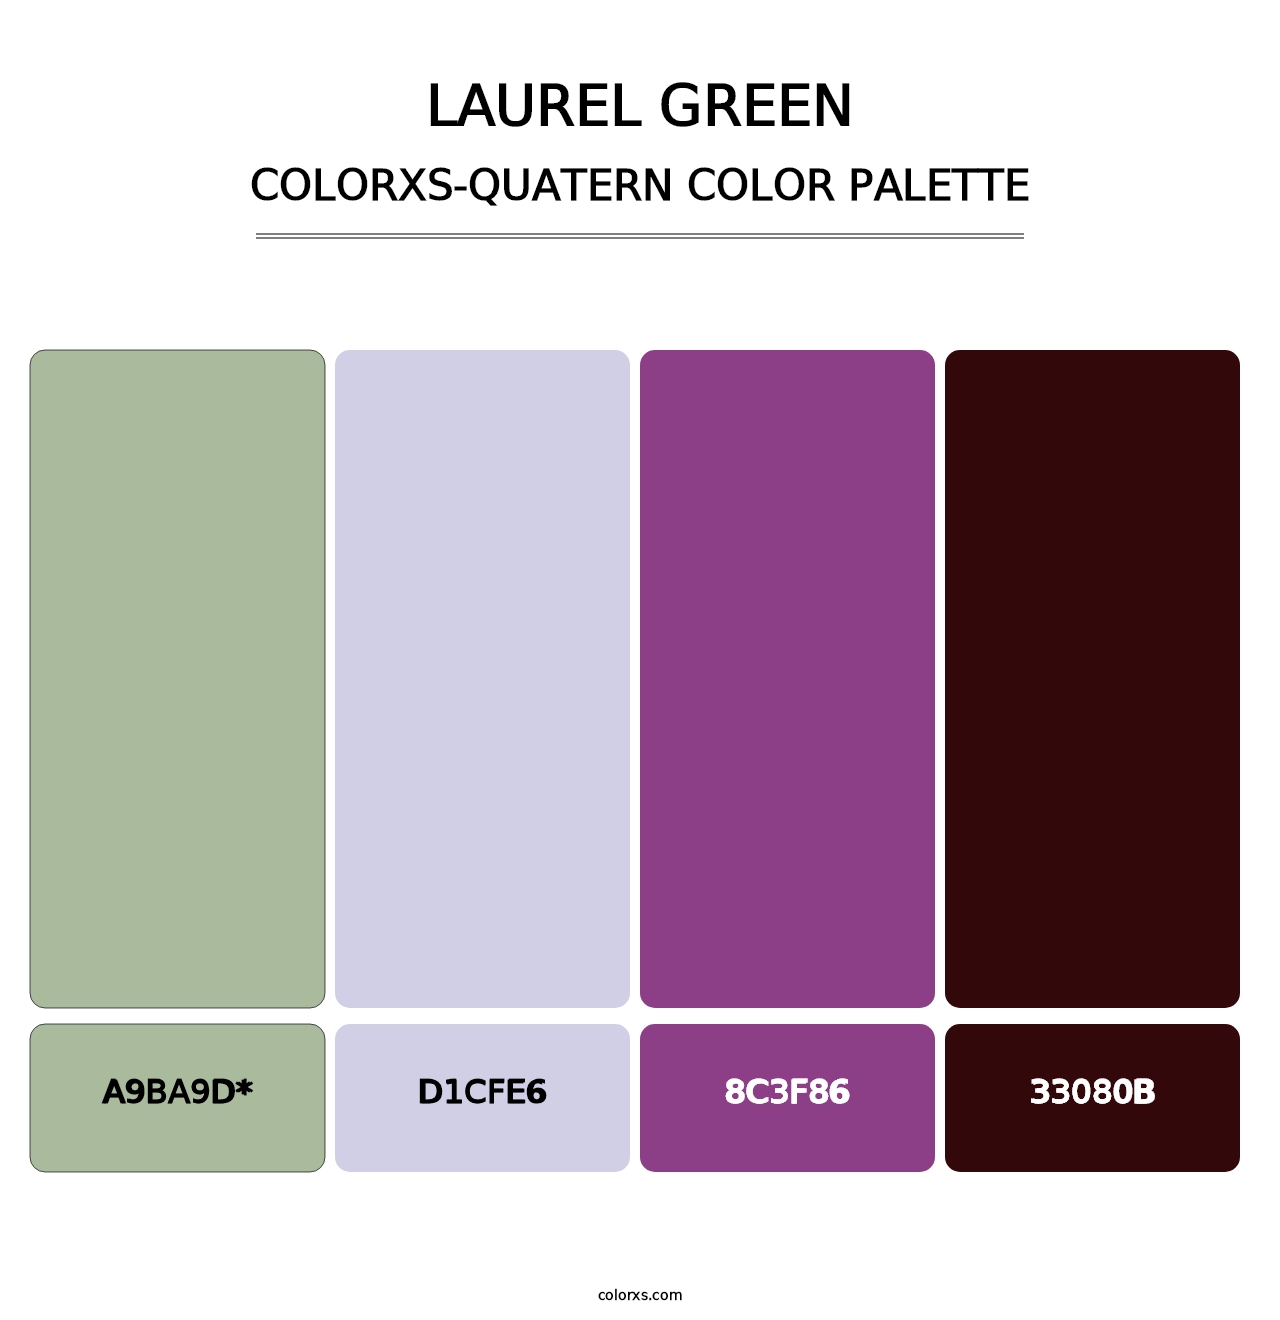 Laurel Green - Colorxs Quatern Palette